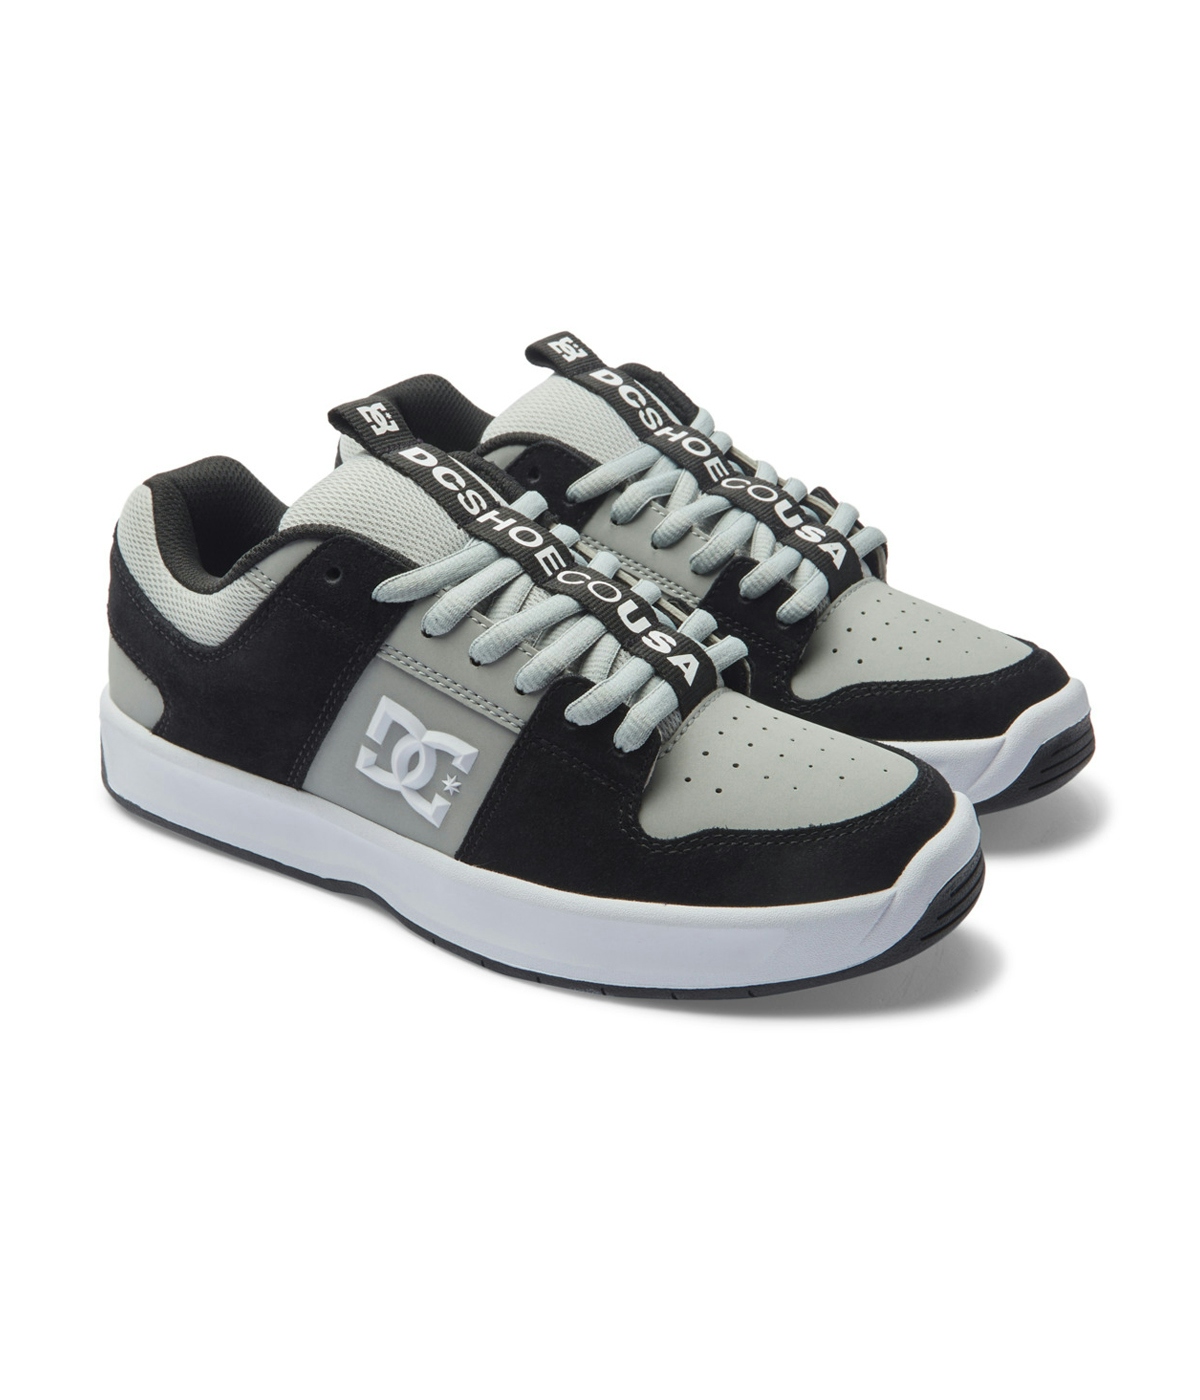 DC Shoes Lynx Zero Shoes Black/Grey/White 1